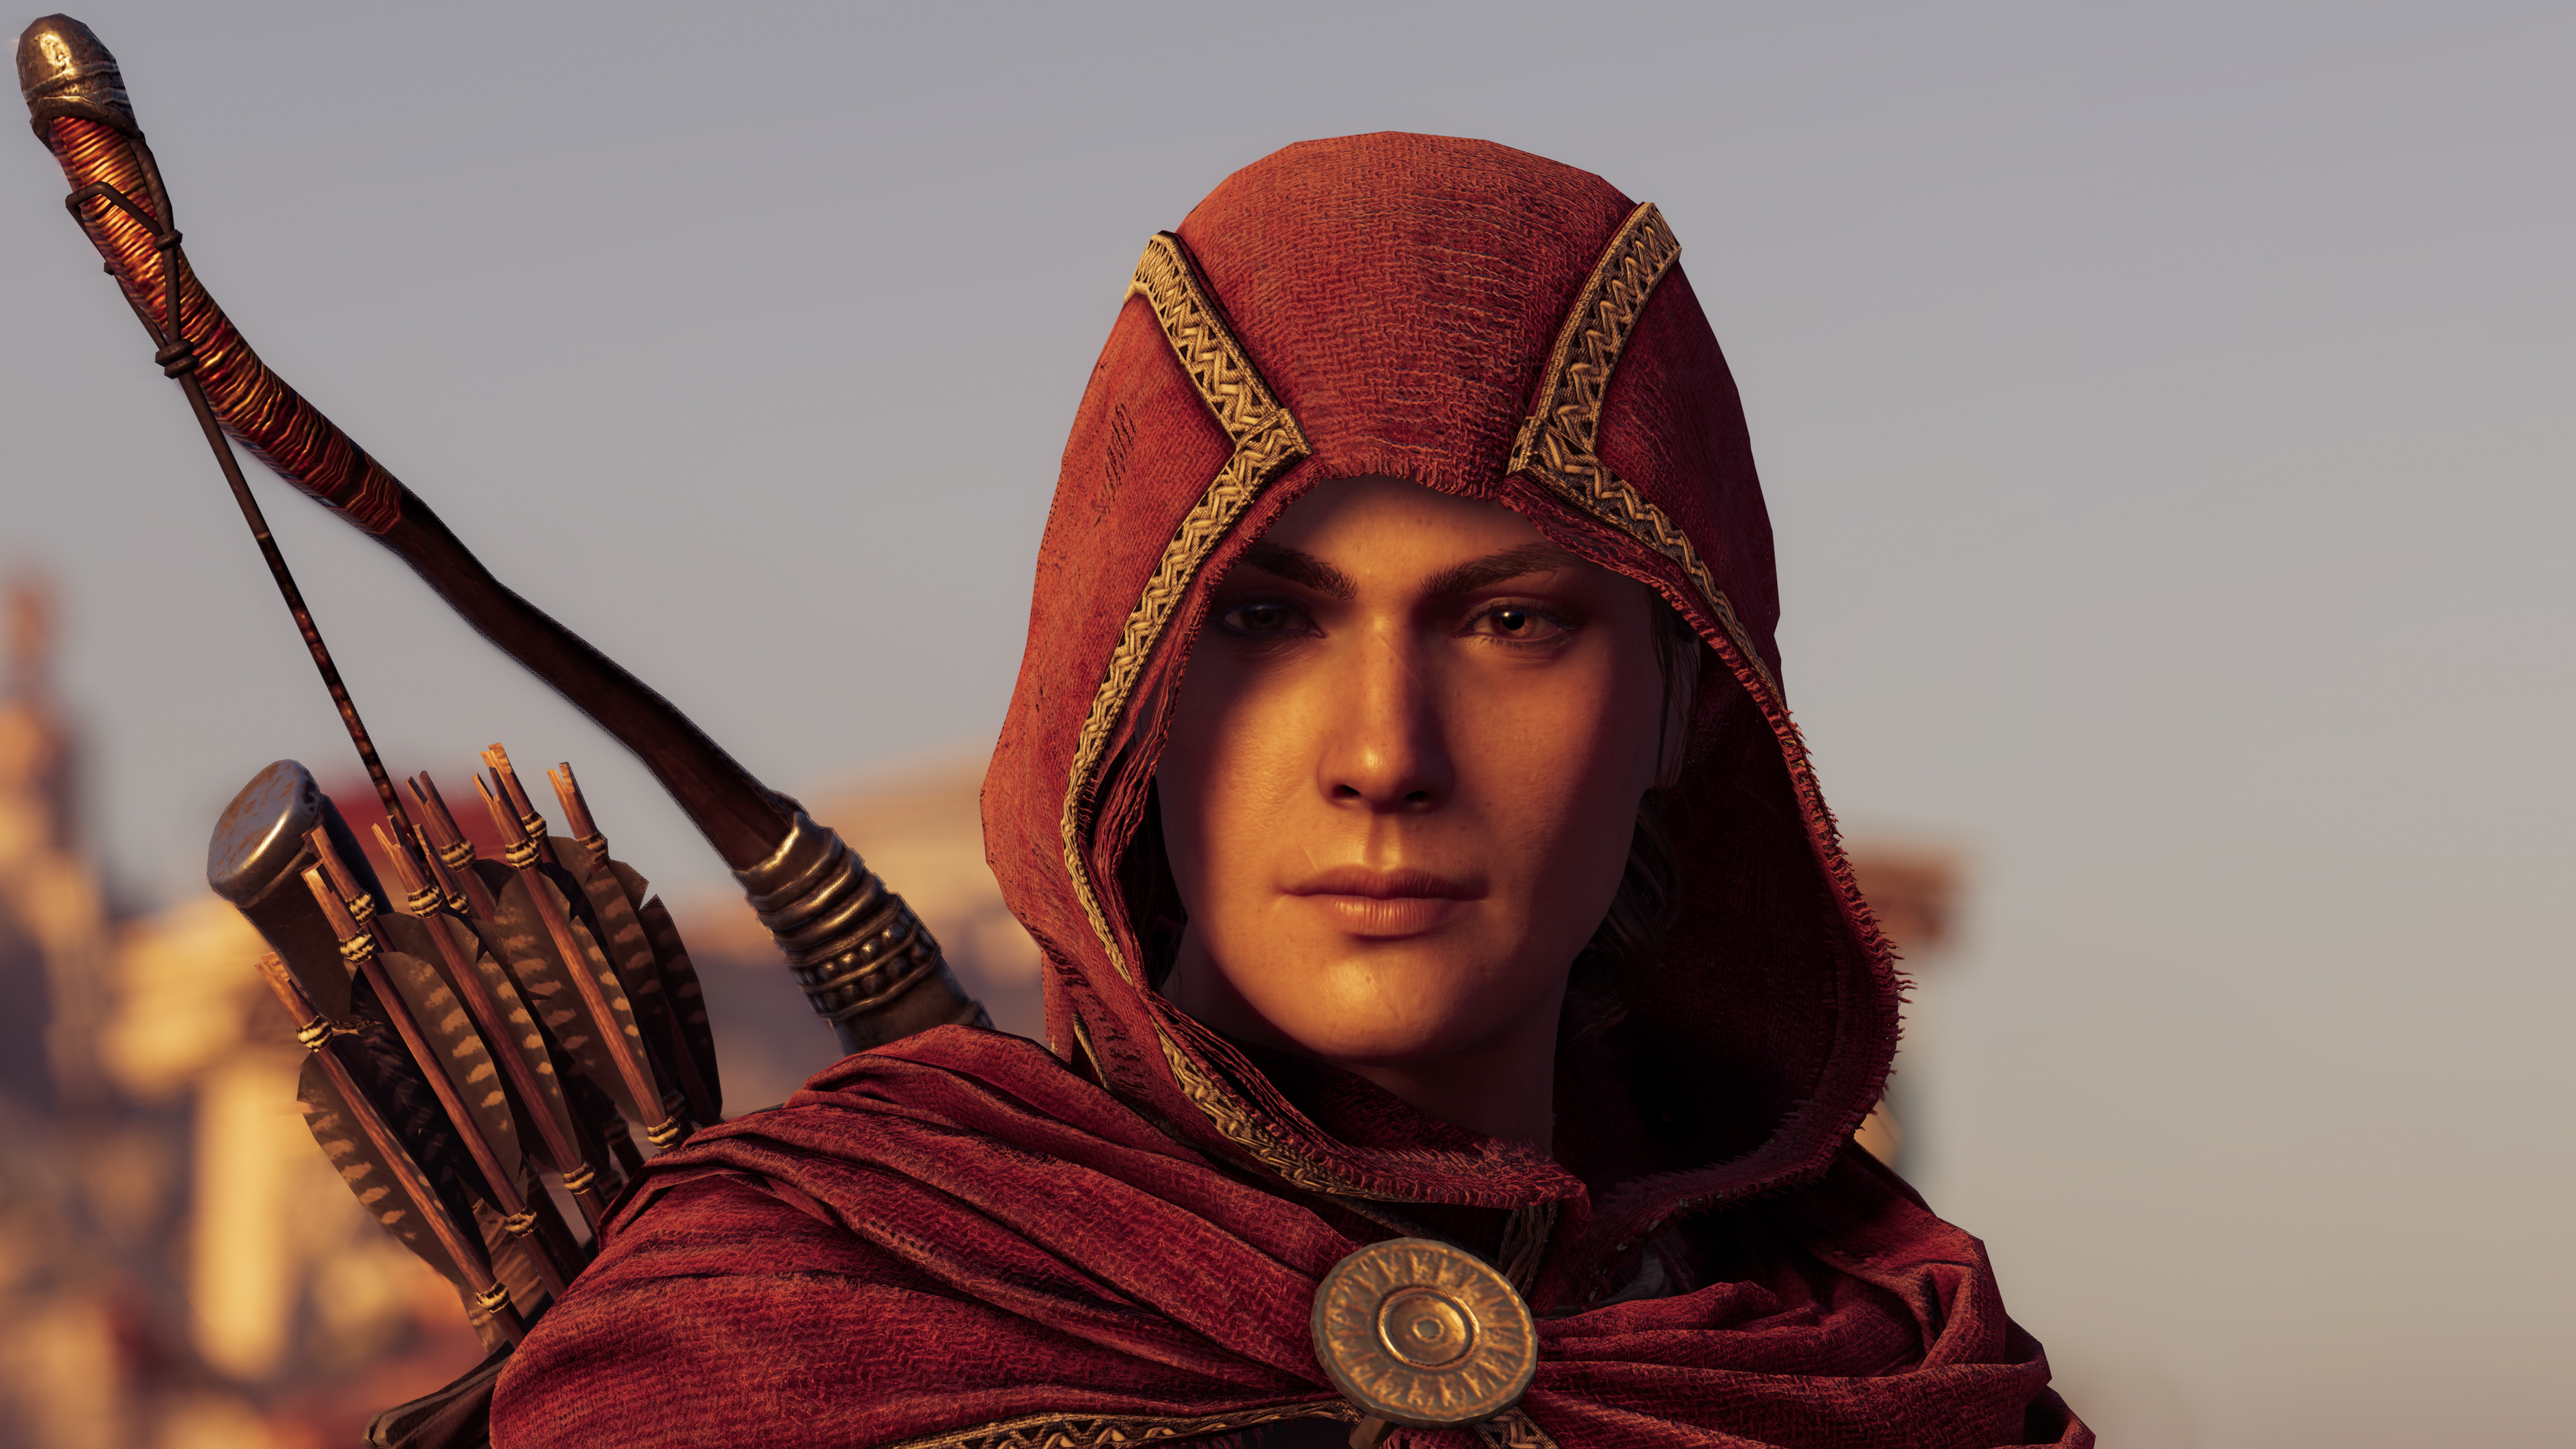 Kassandra In Assassins Creed Odyssey 4k - Assassin's Creed Odyssey Kassandra - HD Wallpaper 